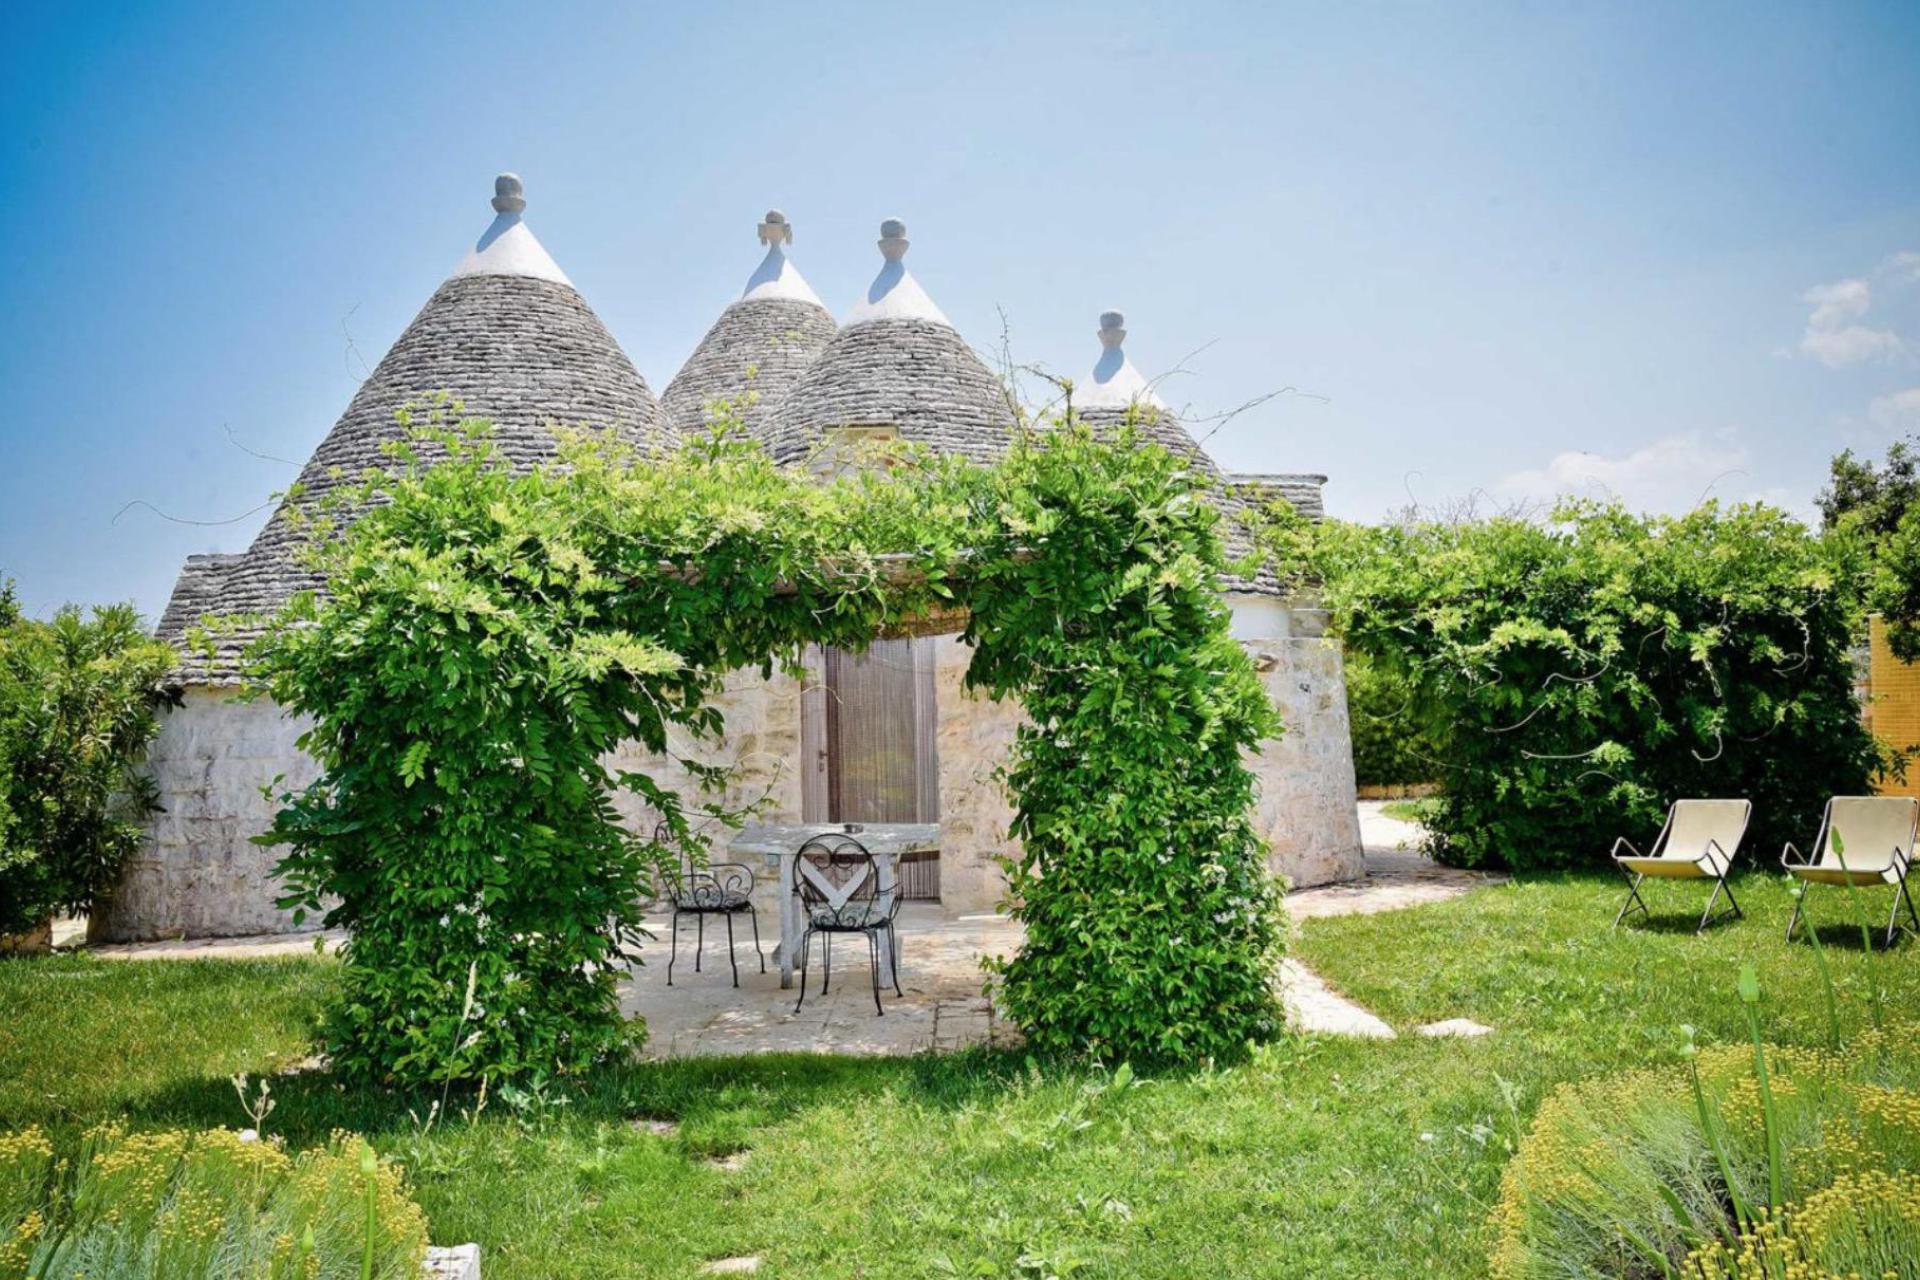 Agriturismo Puglia Southern Italian hospitality in beautiful trulli